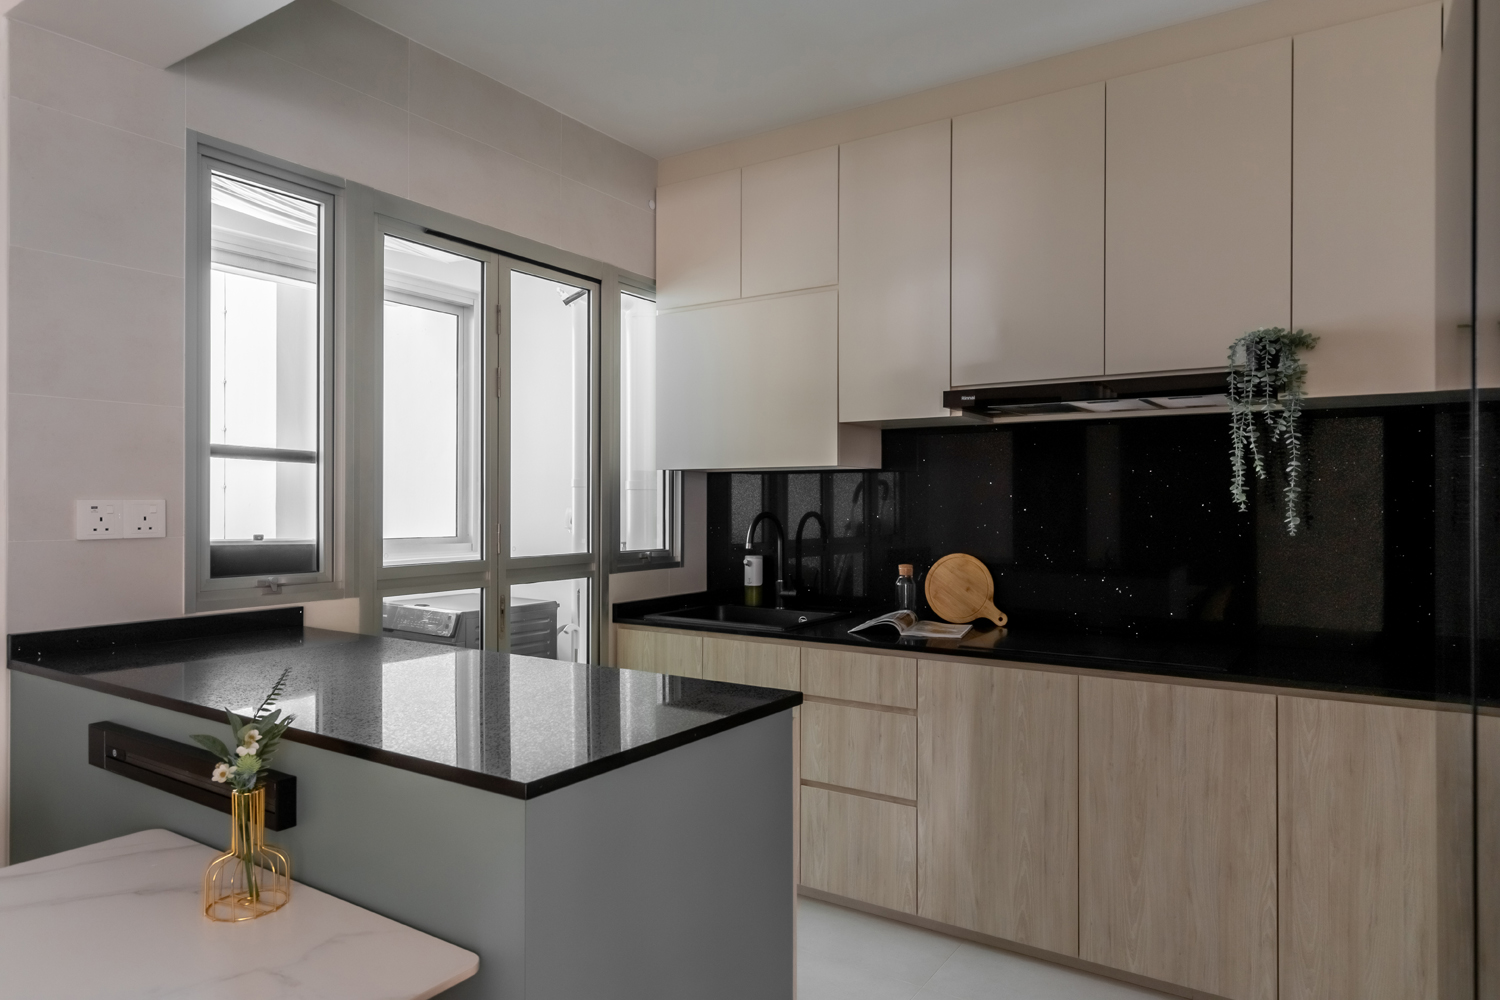 Modern Design - Kitchen - HDB 4 Room - Design by U-Home Interior Design Pte Ltd